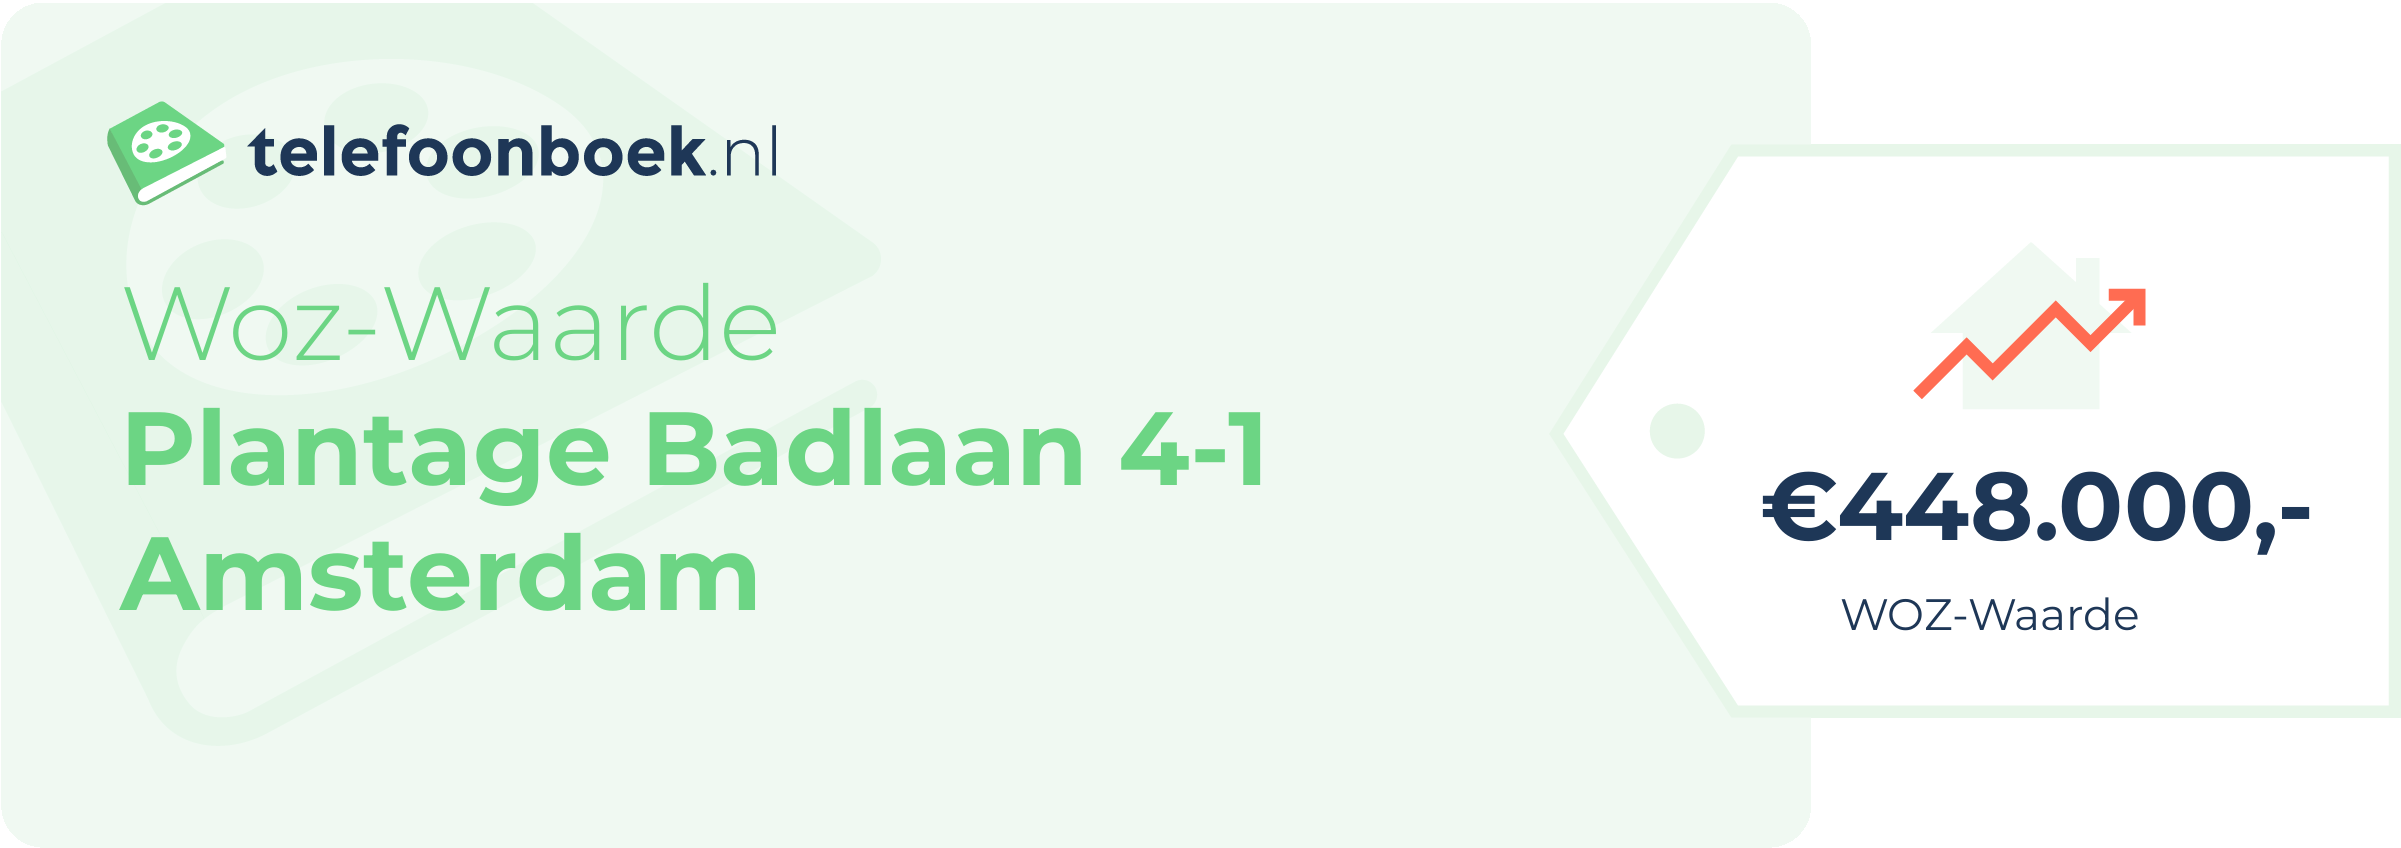 WOZ-waarde Plantage Badlaan 4-1 Amsterdam